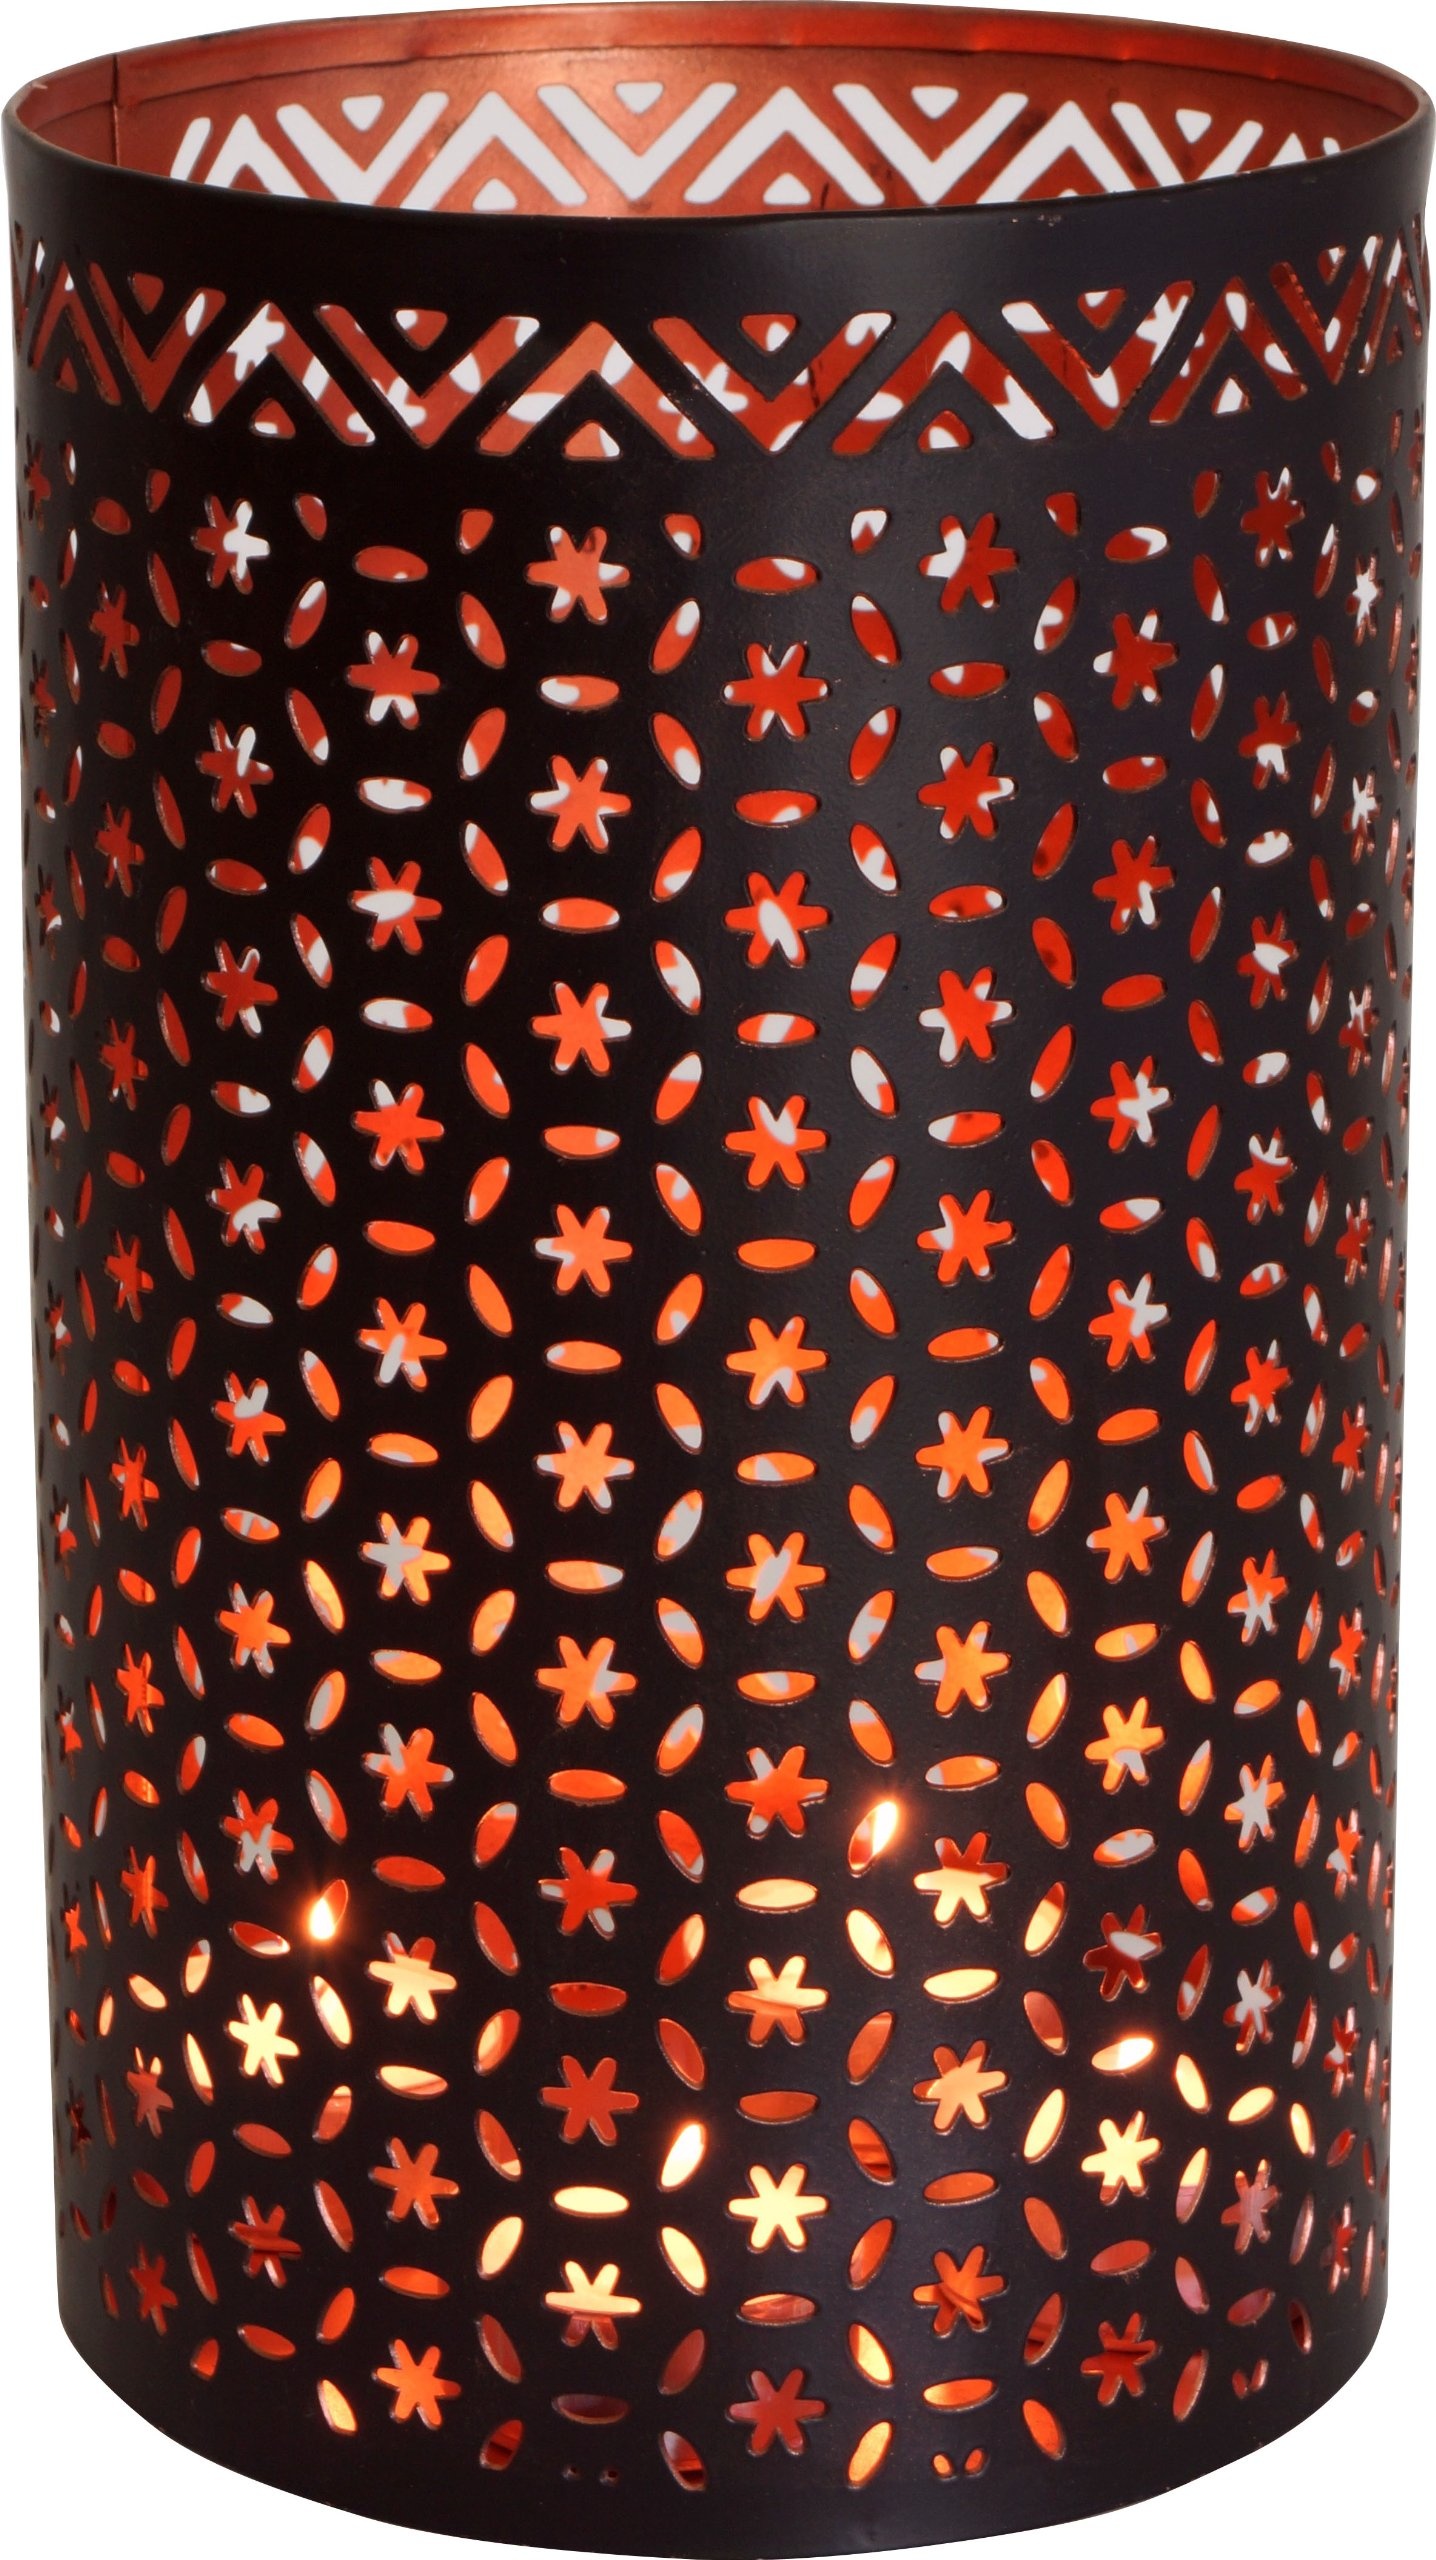 GURU SHOP Runde Metall Windlicht Leuchte, Passend für Teelicht Kerzen Oder als Deckenlampe Verwendbar - Modell 3, Braun, Größe: 16 cm, Teelichthalter & Kerzenhalter